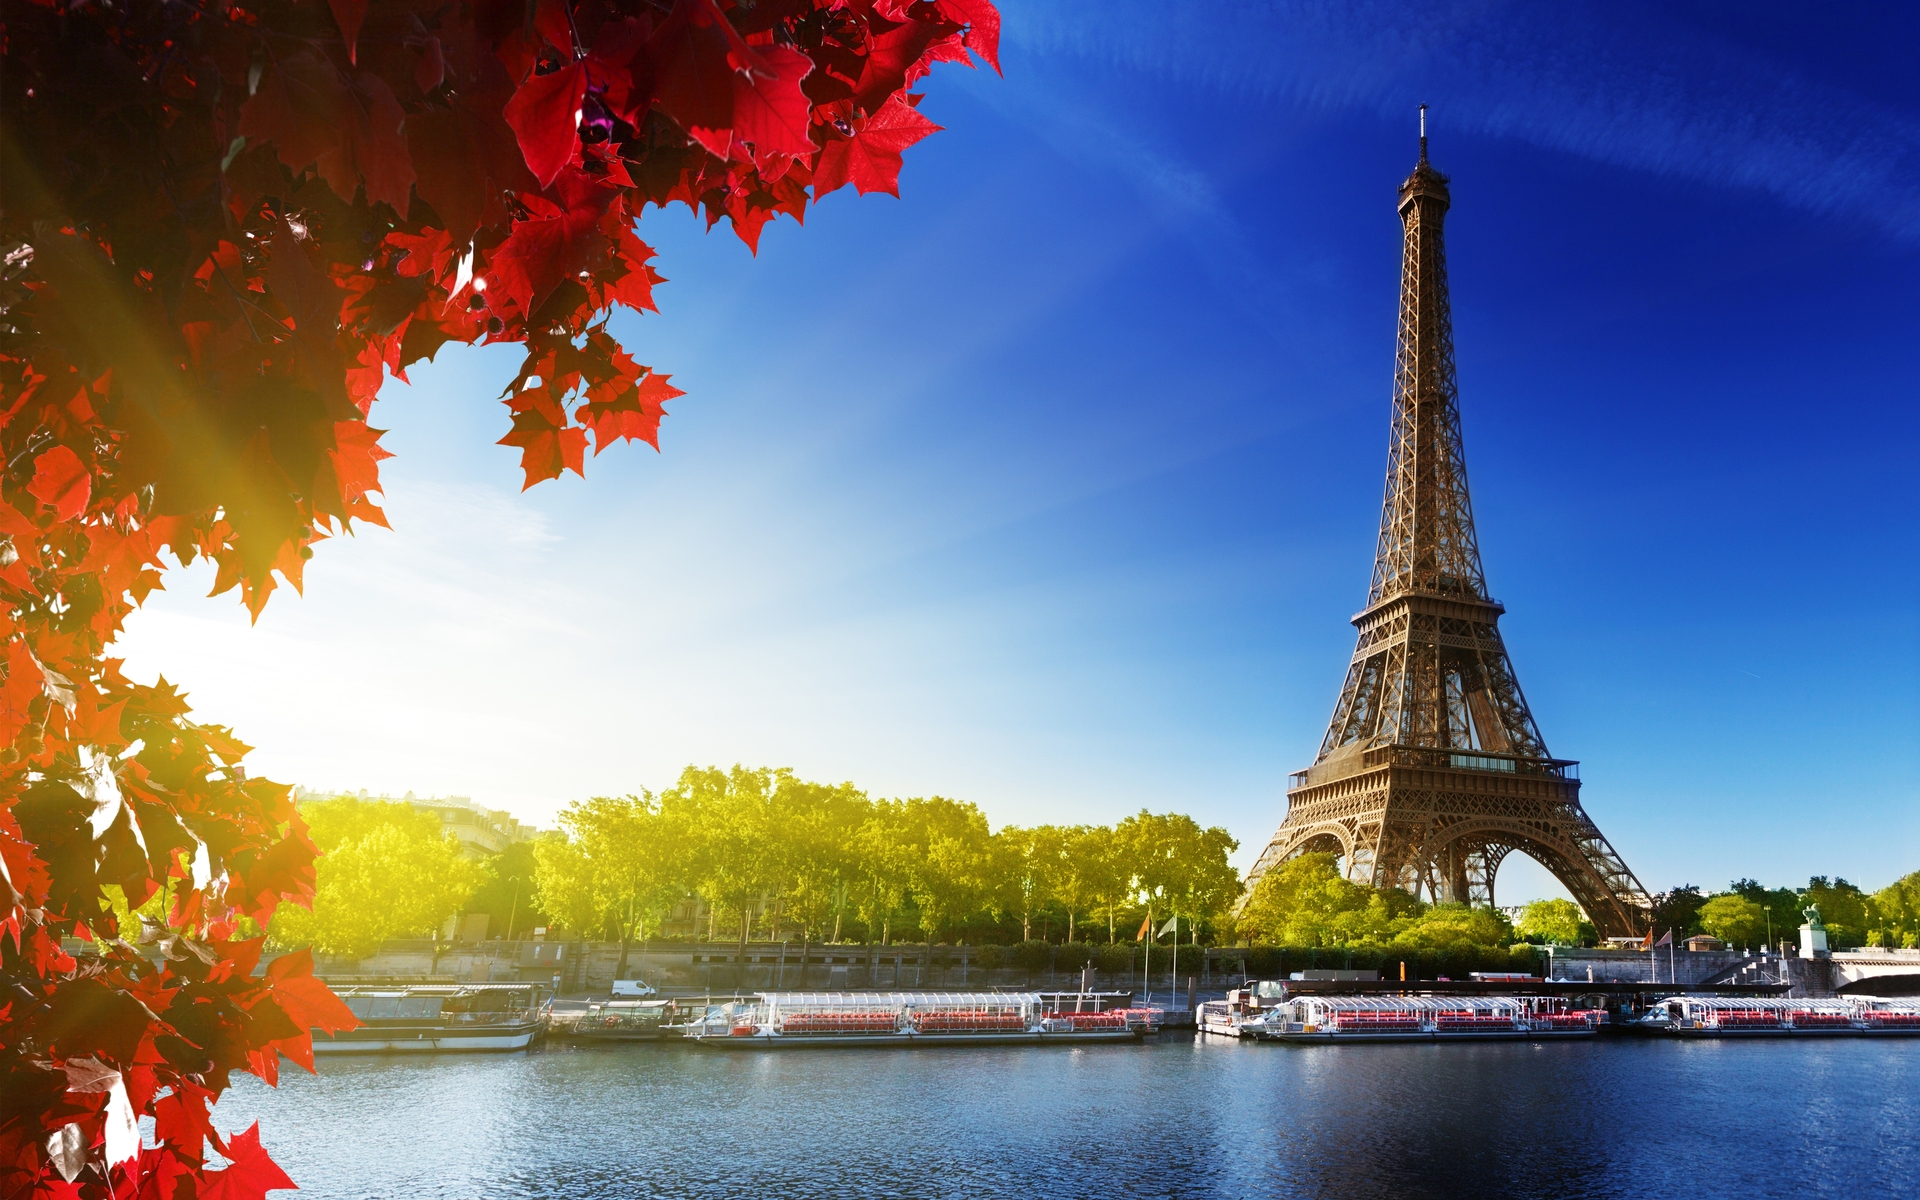 Eiffel Tower Wallpapers: Hình nền Tháp Eiffel đẹp như mơ - một lựa chọn hoàn hảo để tận hưởng vẻ đẹp của kỳ quan kiến trúc nổi tiếng. Thừa hưởng những bức ảnh ấn tượng nhất và trang trí cho thiết bị của bạn với hình nền đẹp nhất.